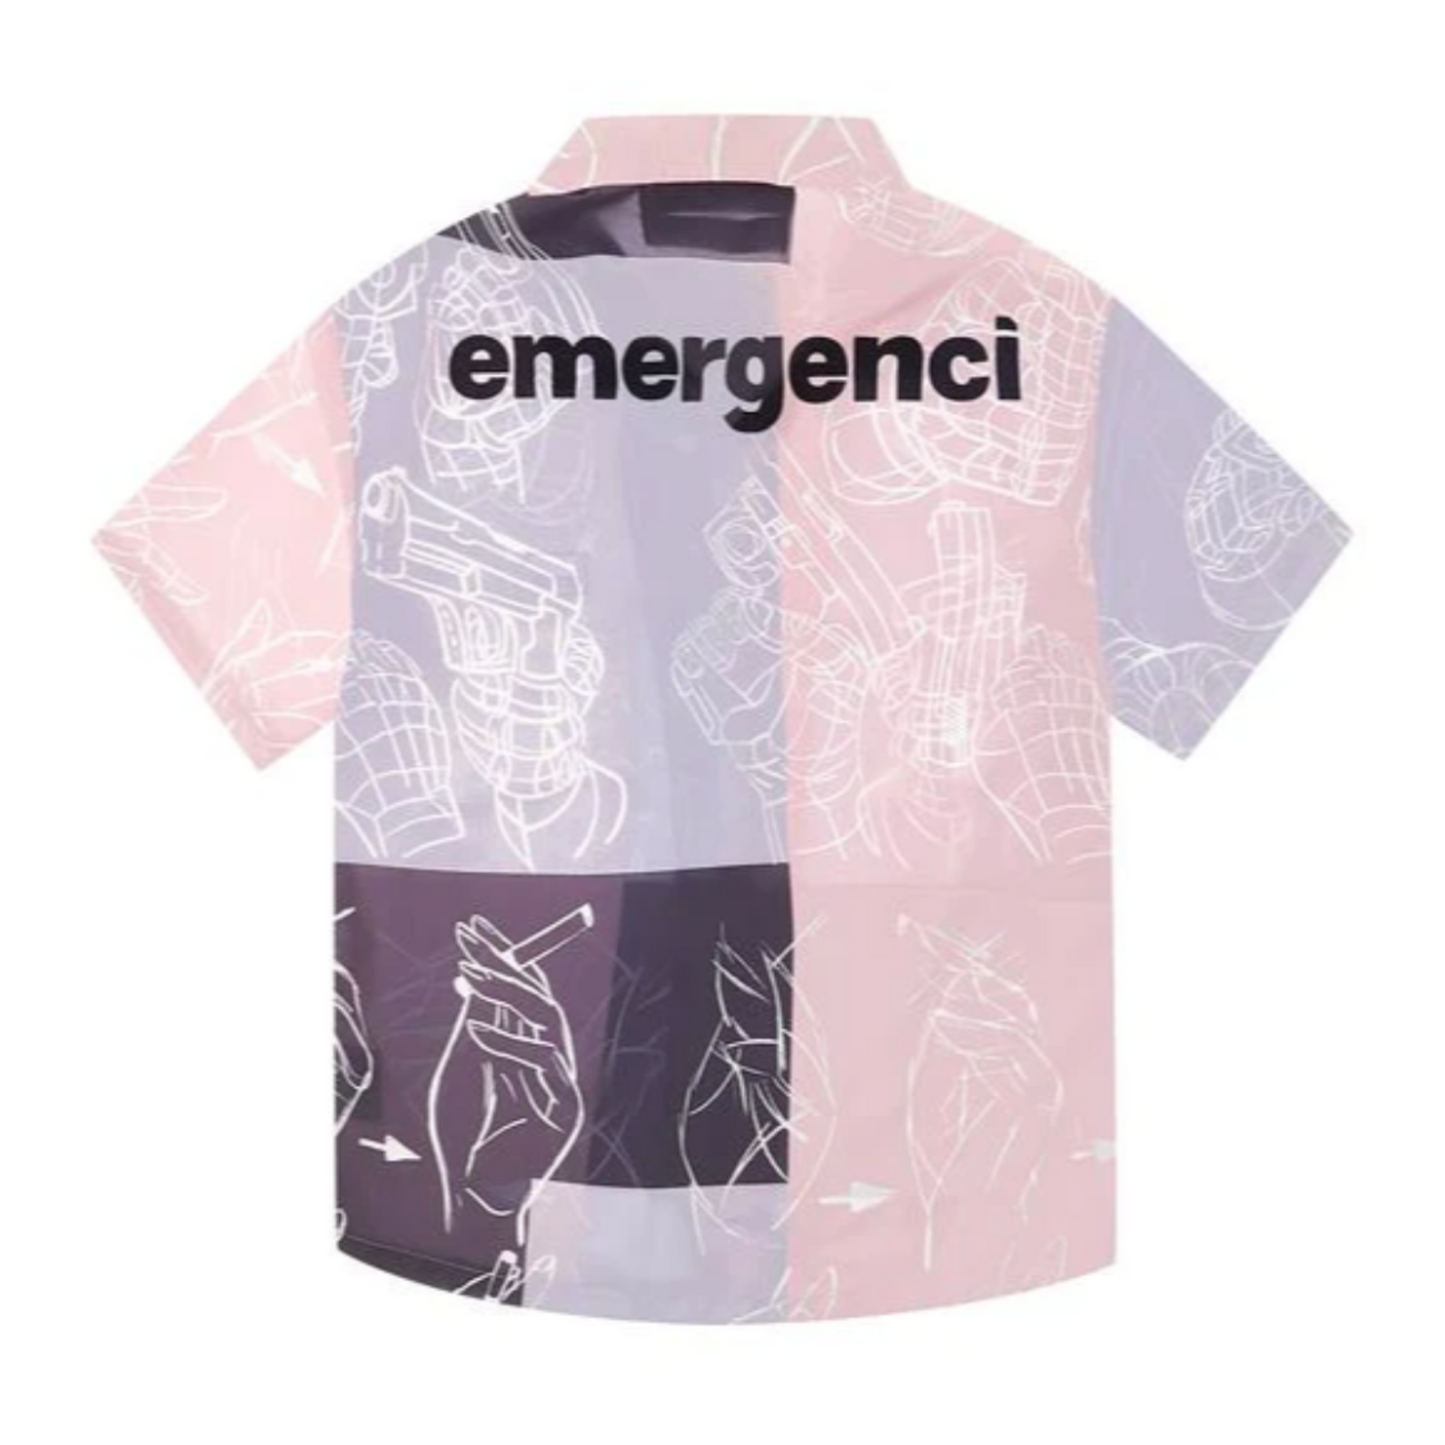 Emergenci EMC Shooting Shirt (Pink)